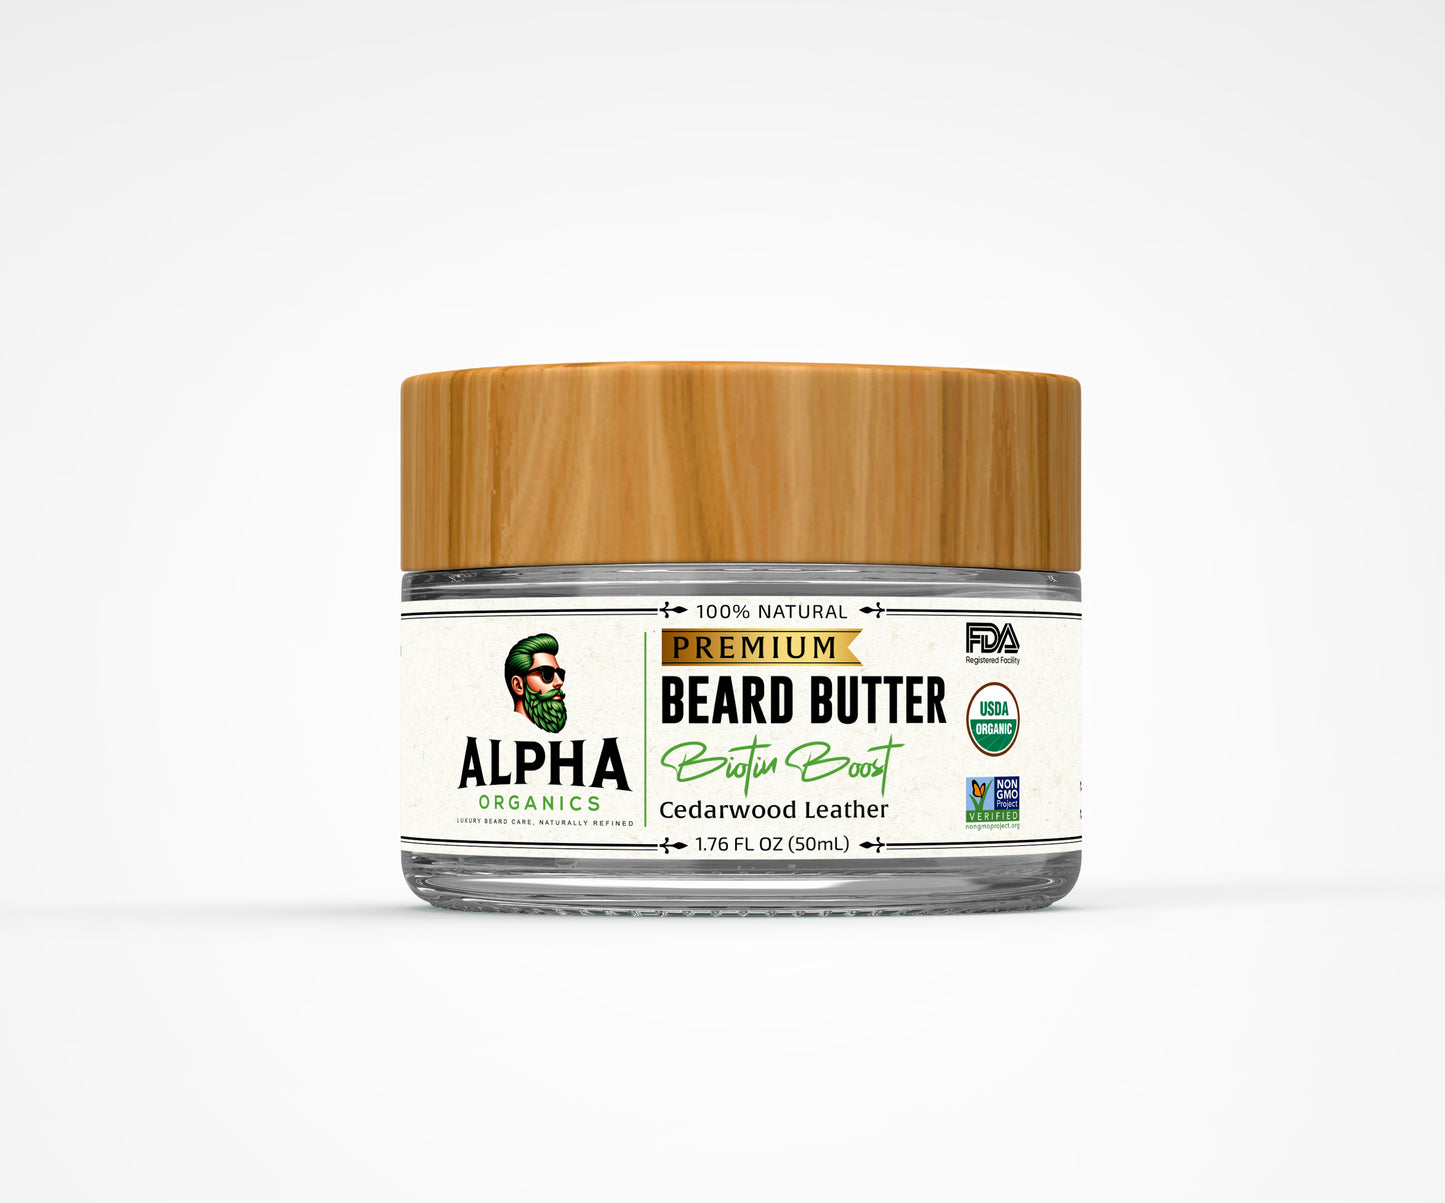 Organic Beard Butter - Biotin Boost - Cedarwood Leather